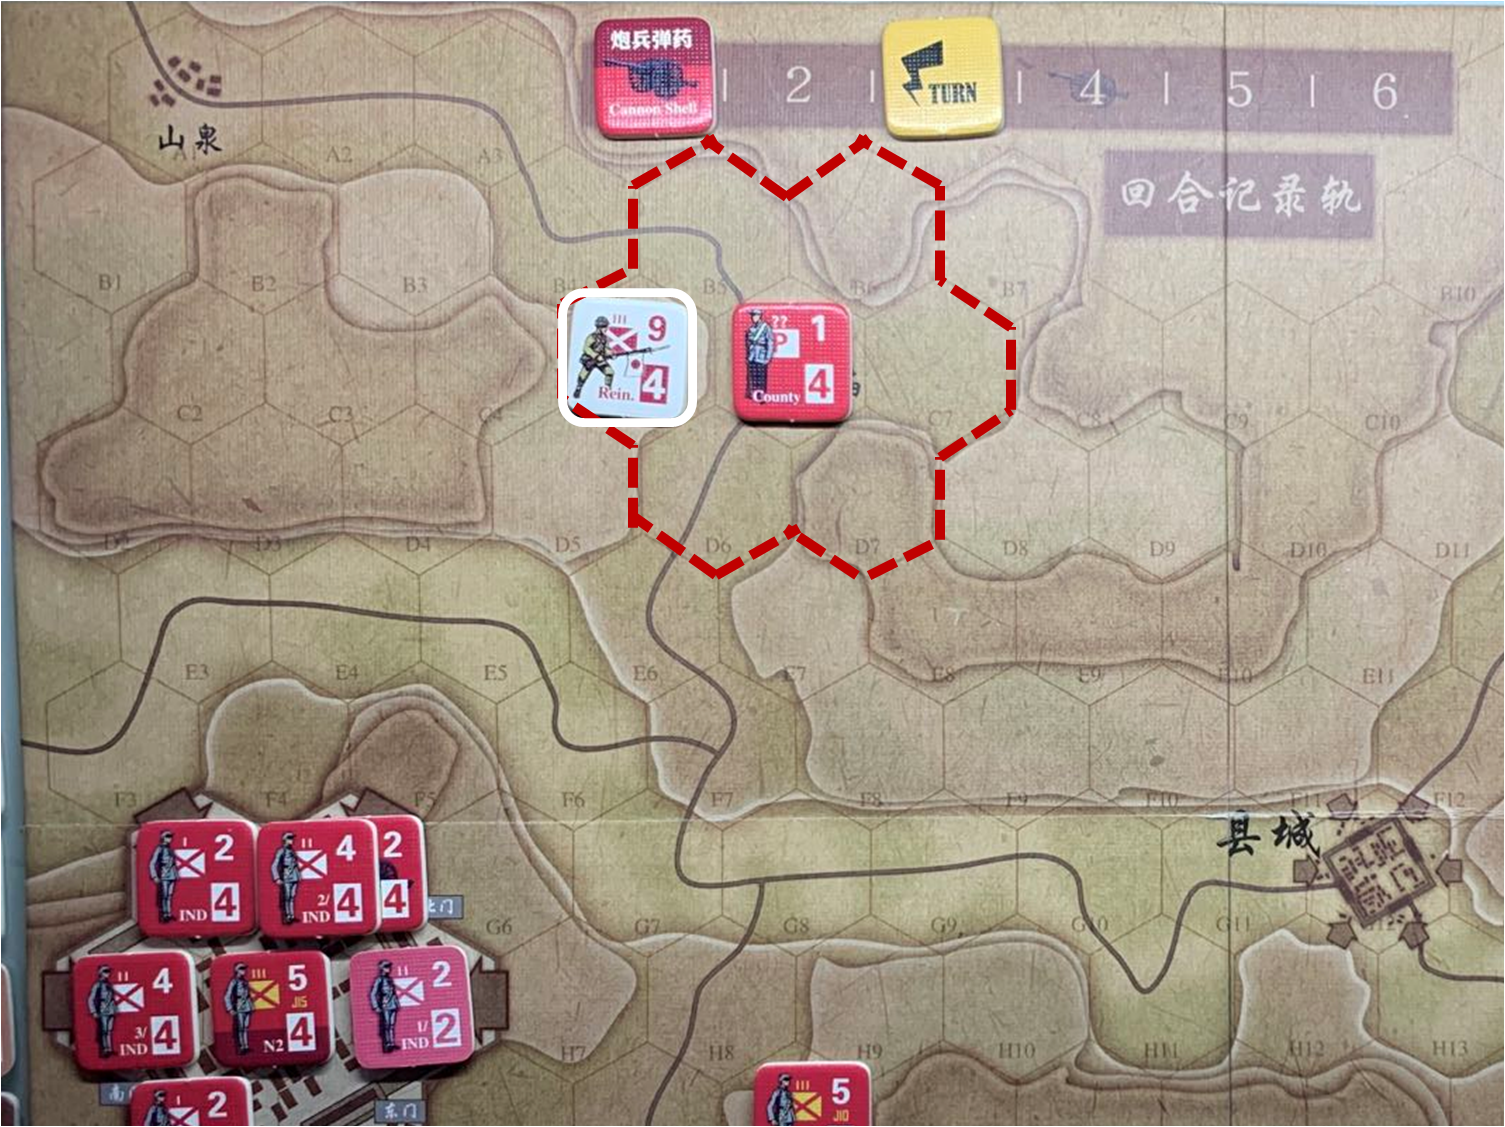 第三回合山泉方向日军增援部队（C5）对于移动命令1的执行计划与结果，及附近共军游击队控制区覆盖范围